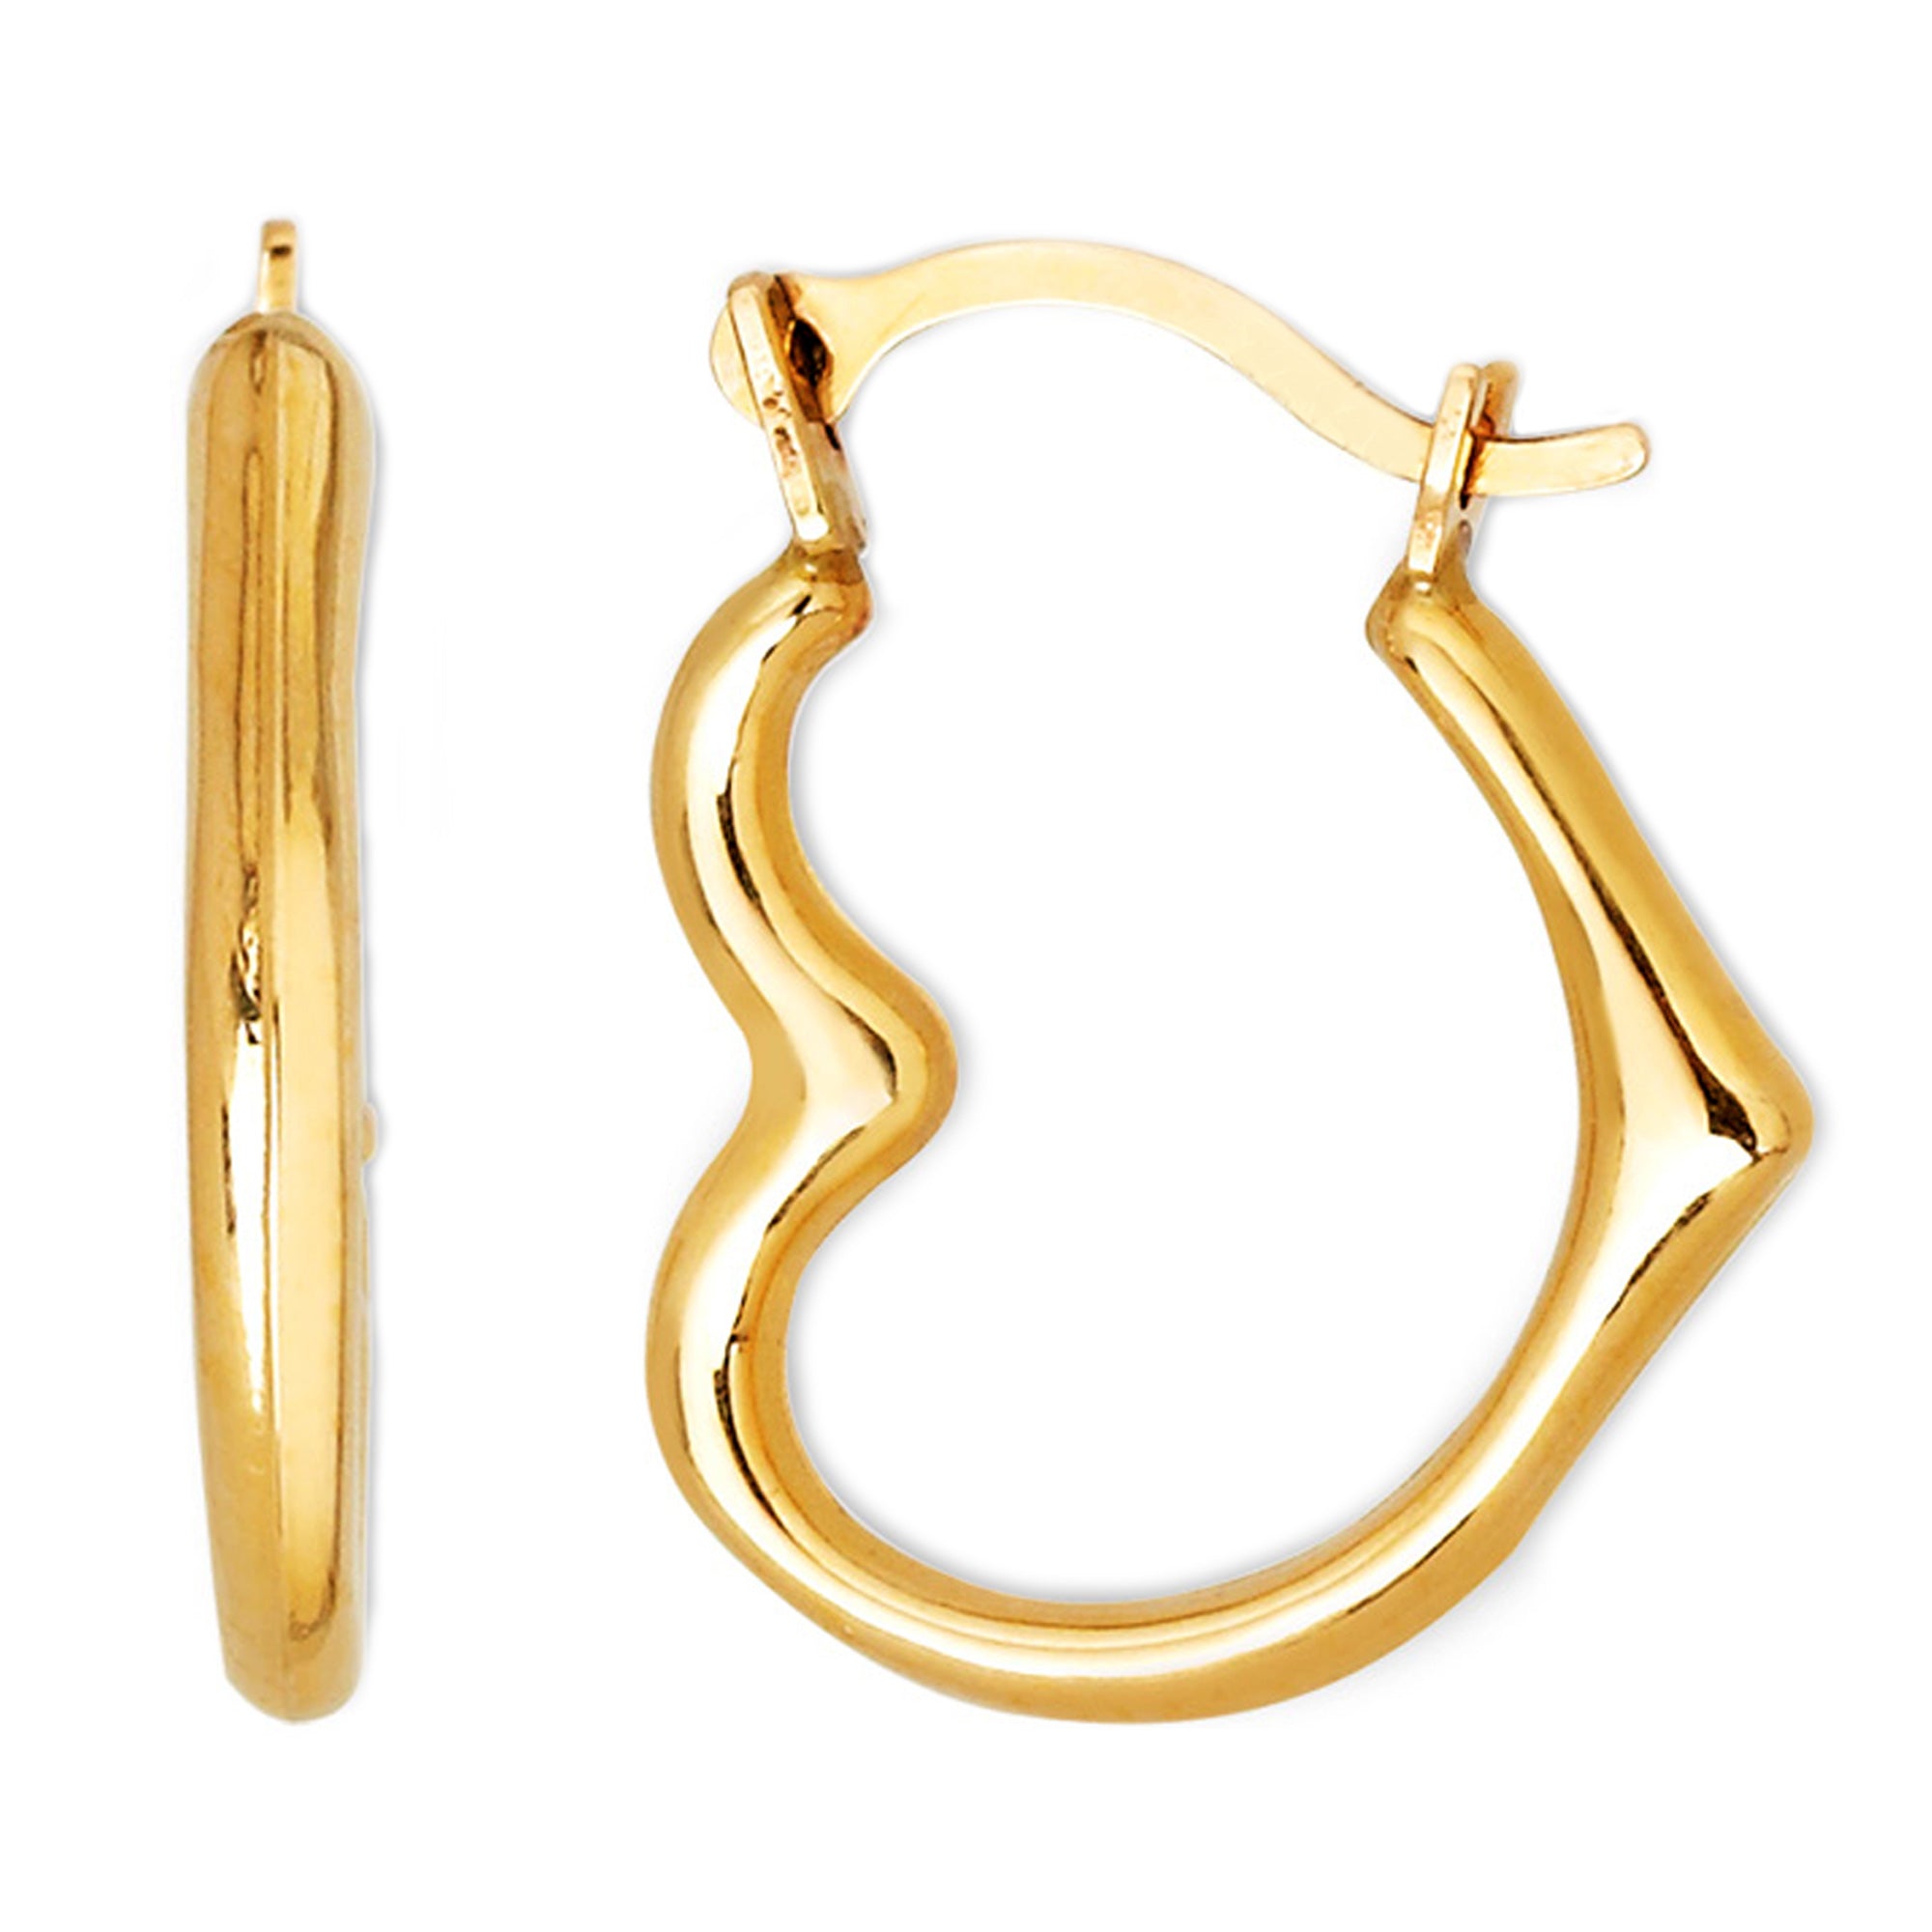 10k Yellow Gold Shiny Open Heart Hoop Earrings, Diameter 15mm